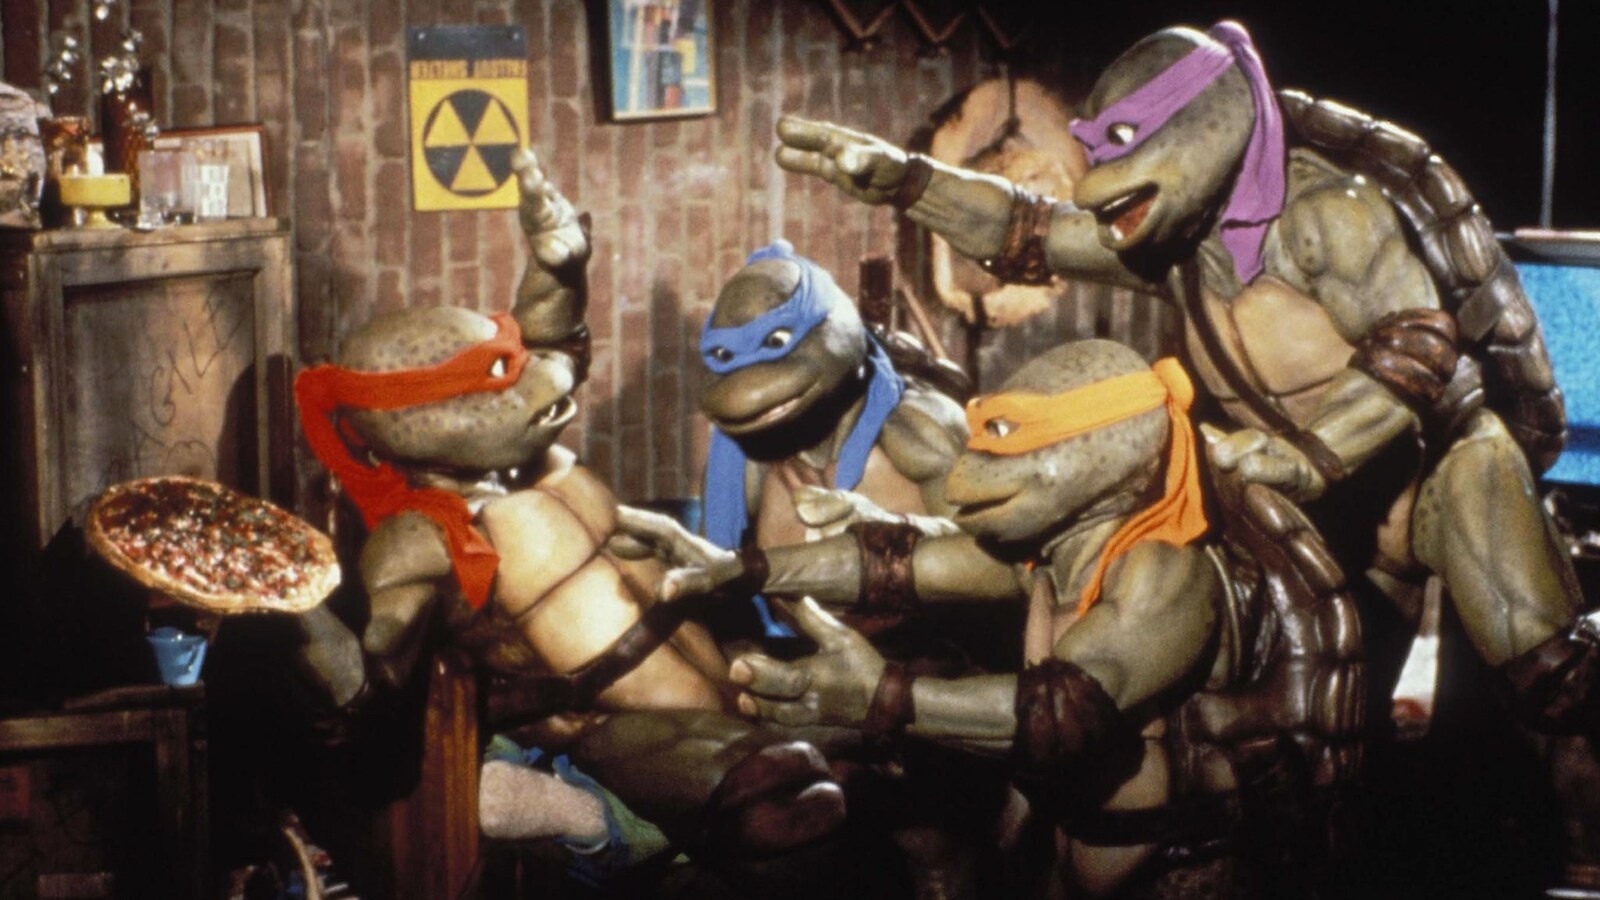 teenage-mutant-ninja-turtles-2-monjan-salaisuus-1991